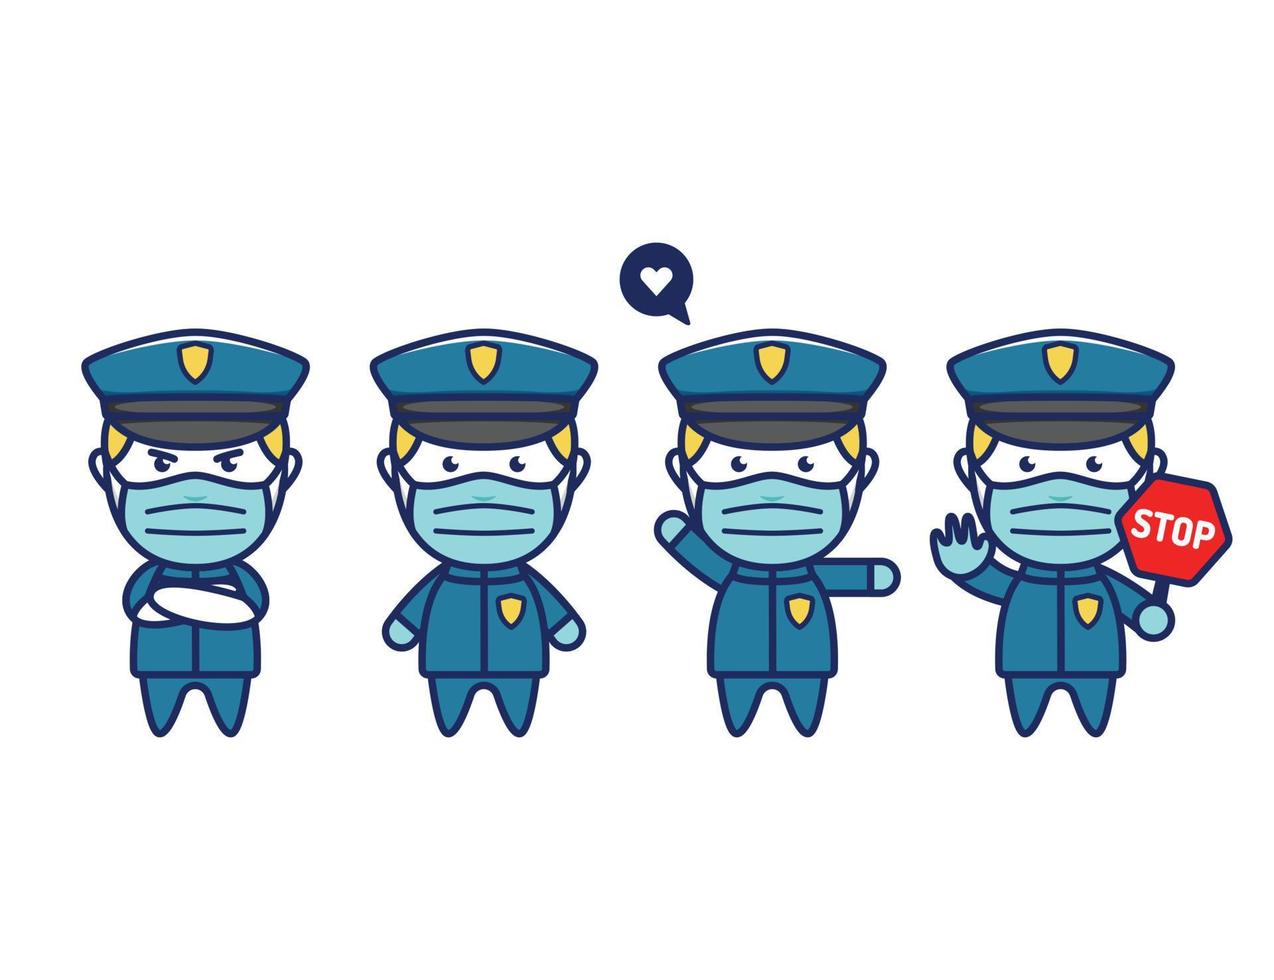 simpatico personaggio mascotte dell'ufficiale di polizia in stile chibi con protezione della maschera facciale dall'influenza pandemica della malattia del coronavirus covid vettore